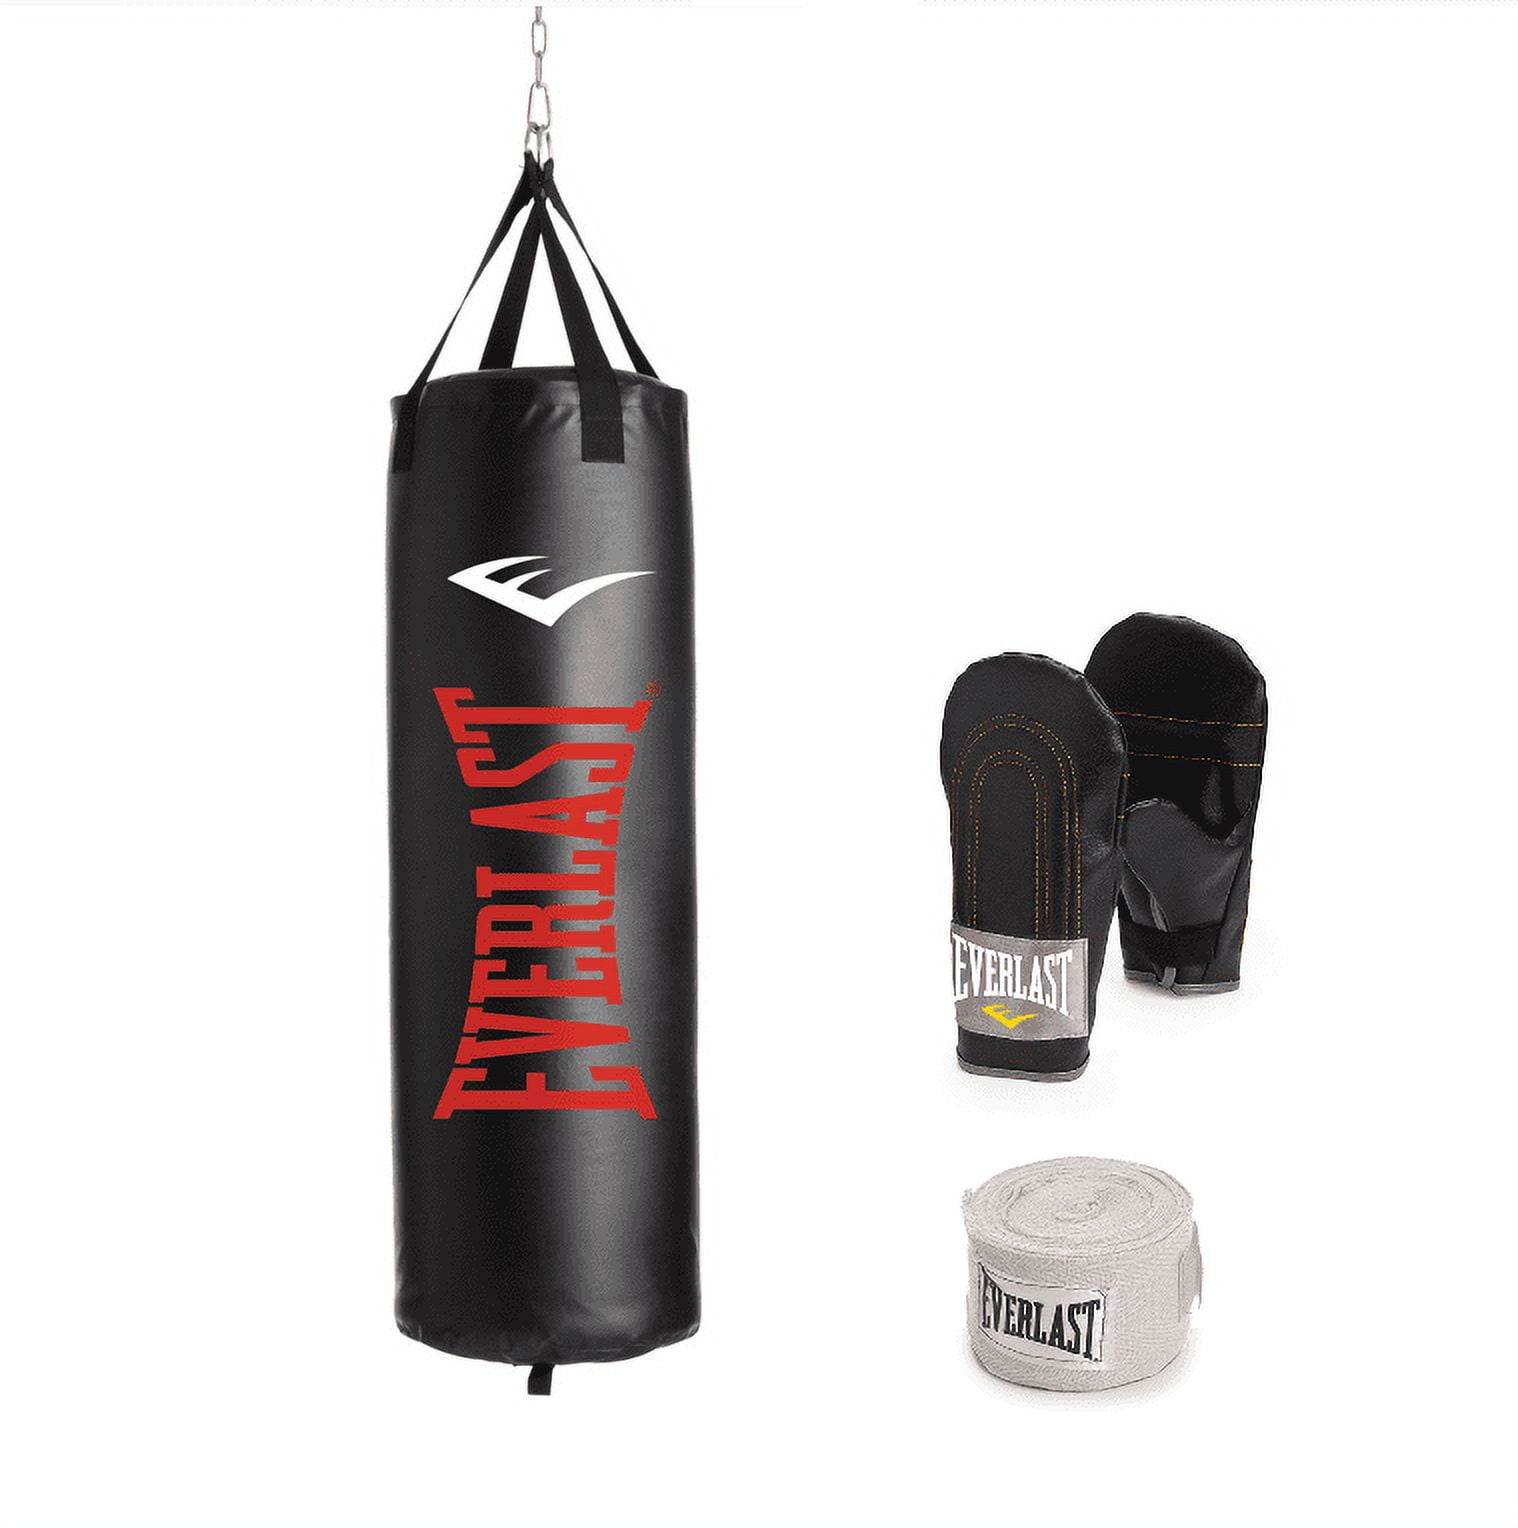 Boxing Punching Bag 100 - Red